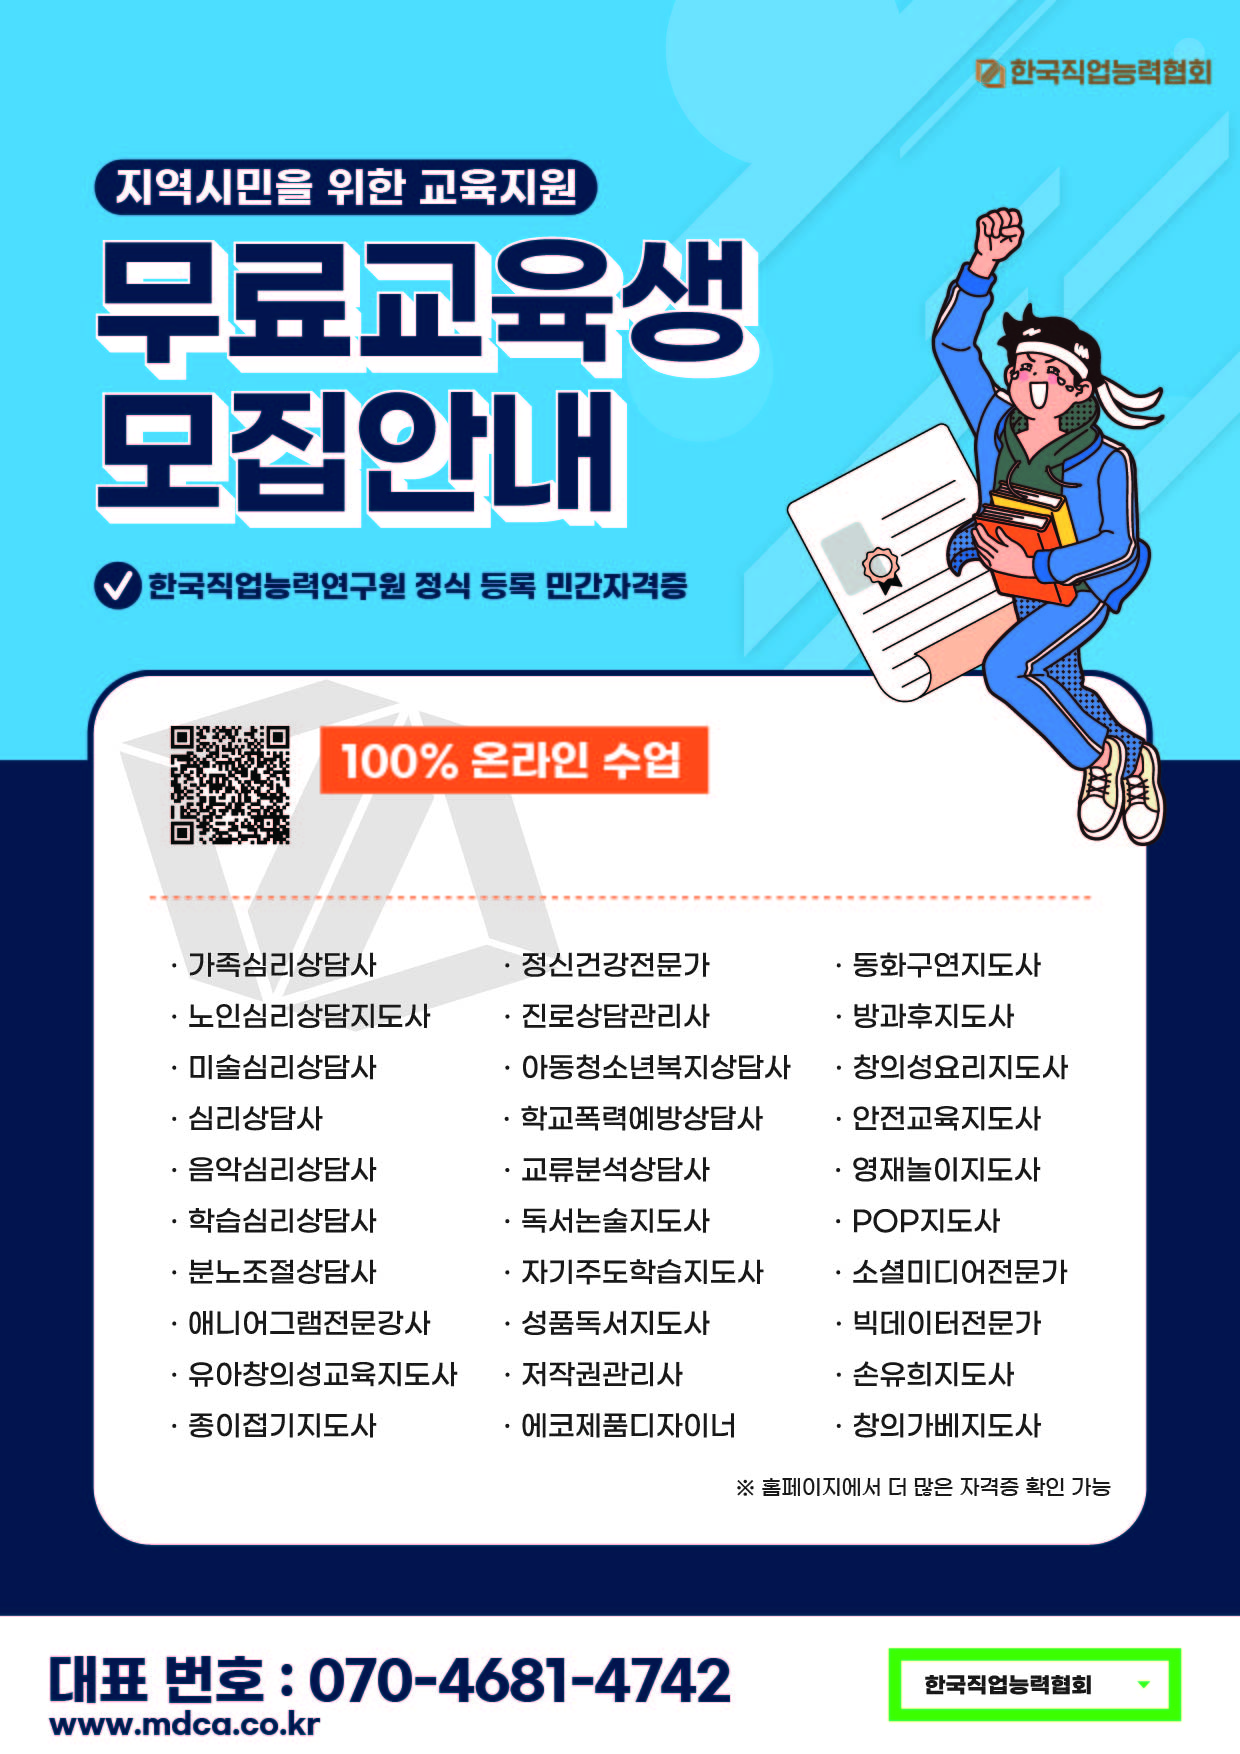 [기장시민 무료교육생 모집] 유망자격증 60종 수강료 전액지원 첨부 이미지